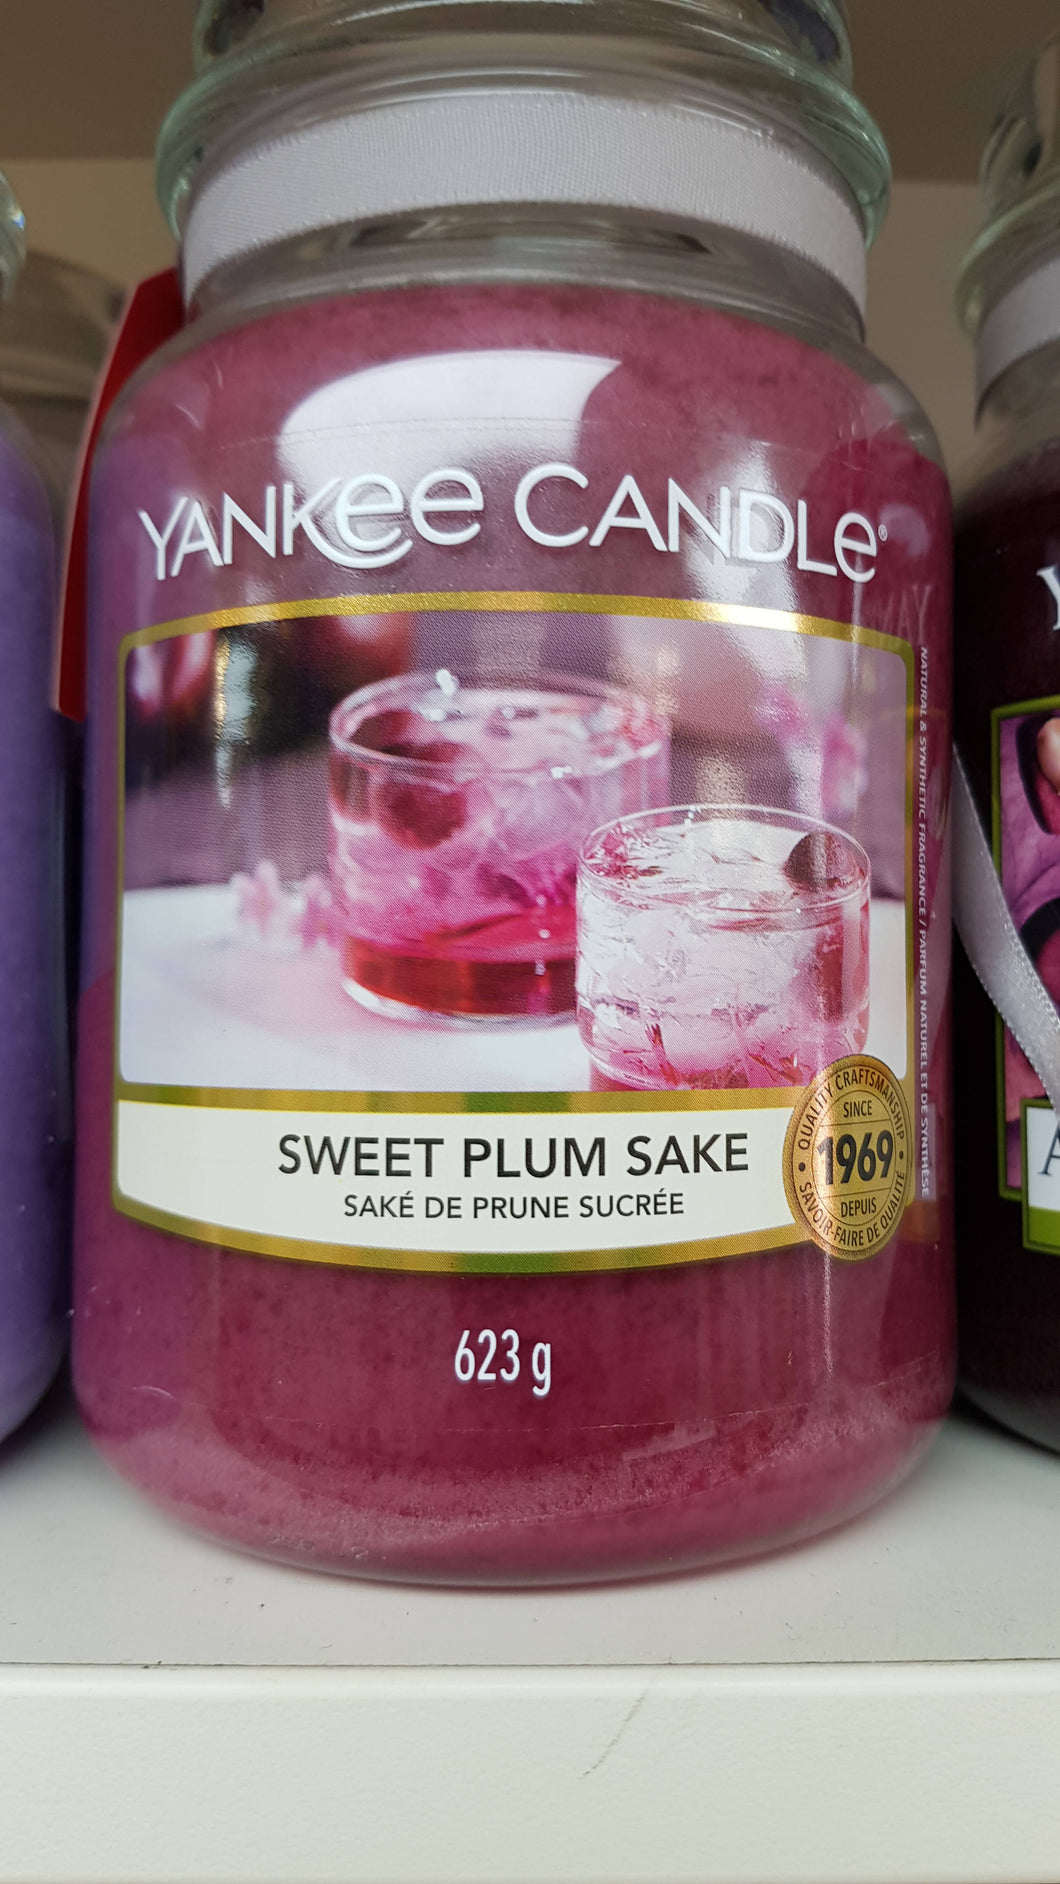 Sweet Plum Sake Yankee Candle